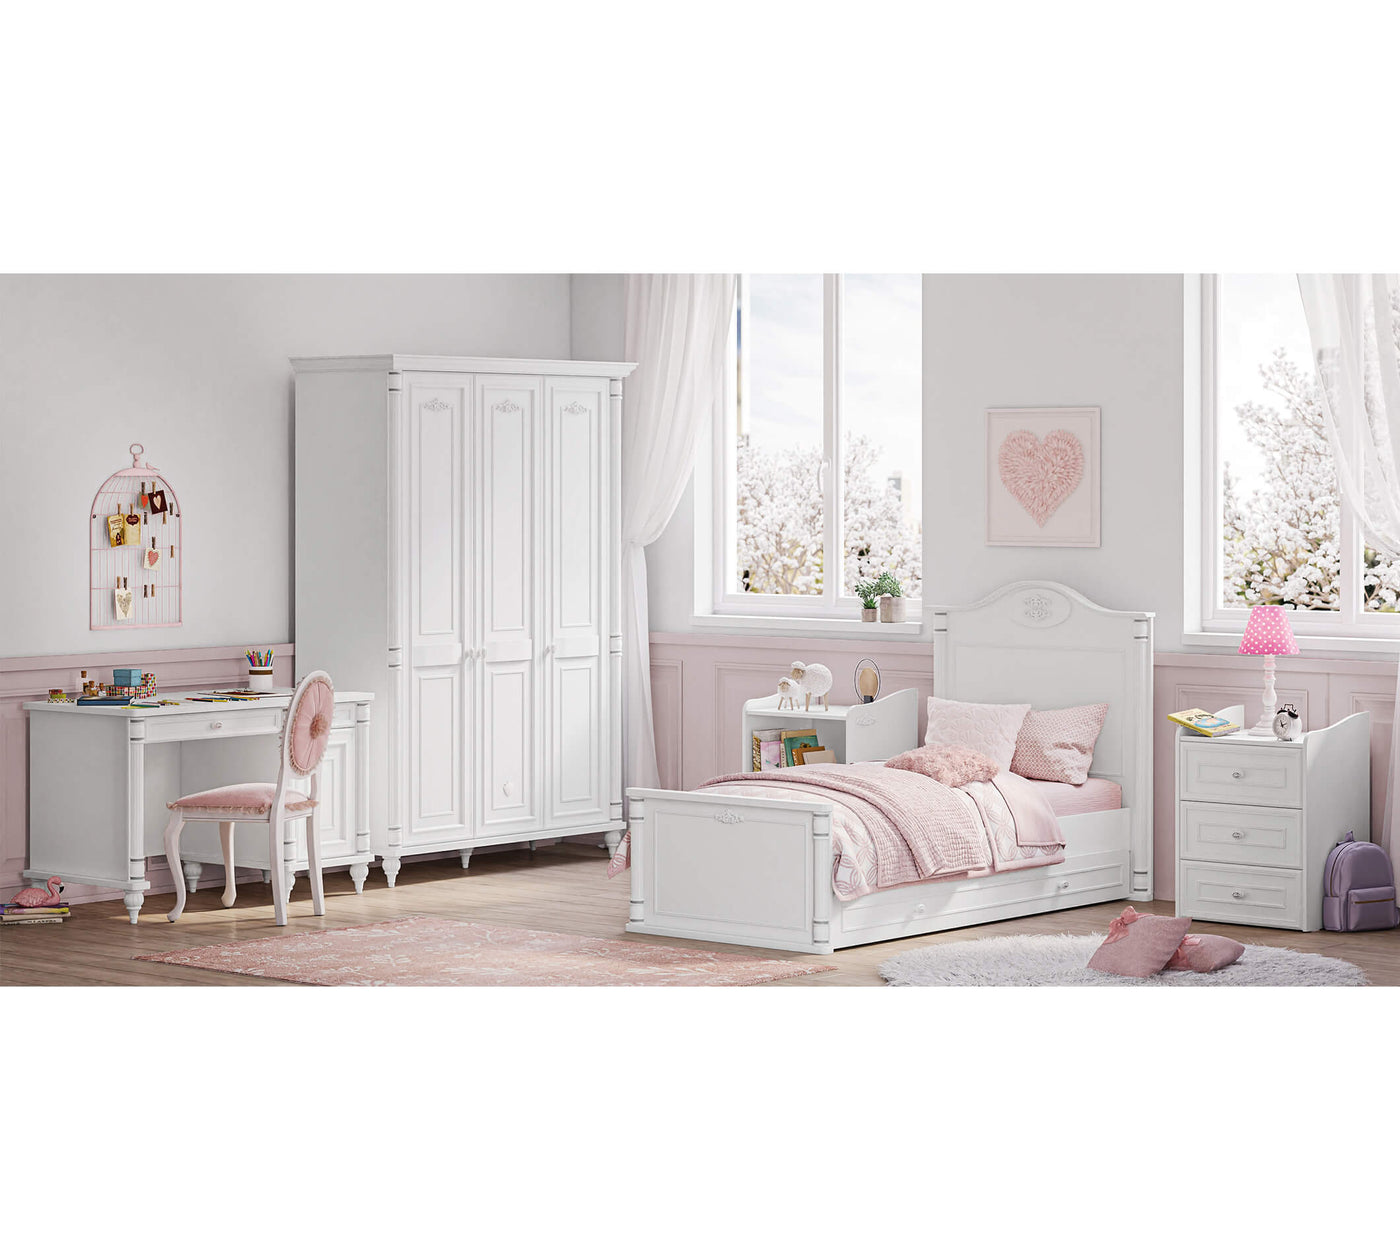 Romantic baby krevat femijesh qe rritet (+ krevati i prinderve )(80x180)